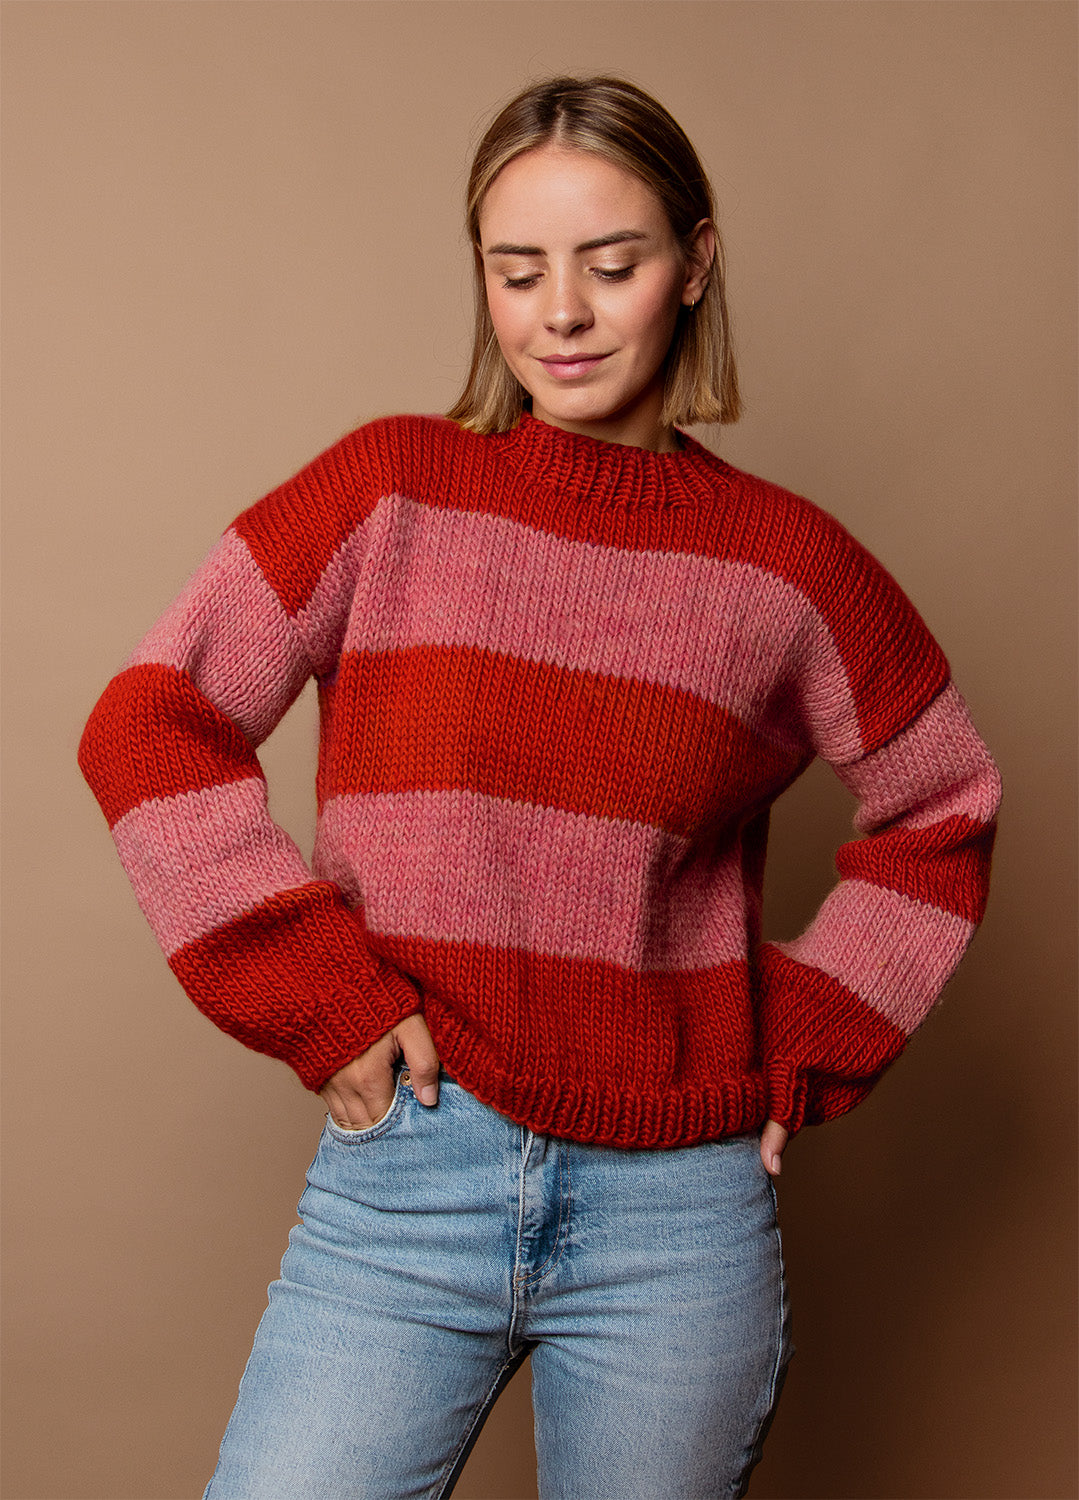 Sweaters – weareknitters